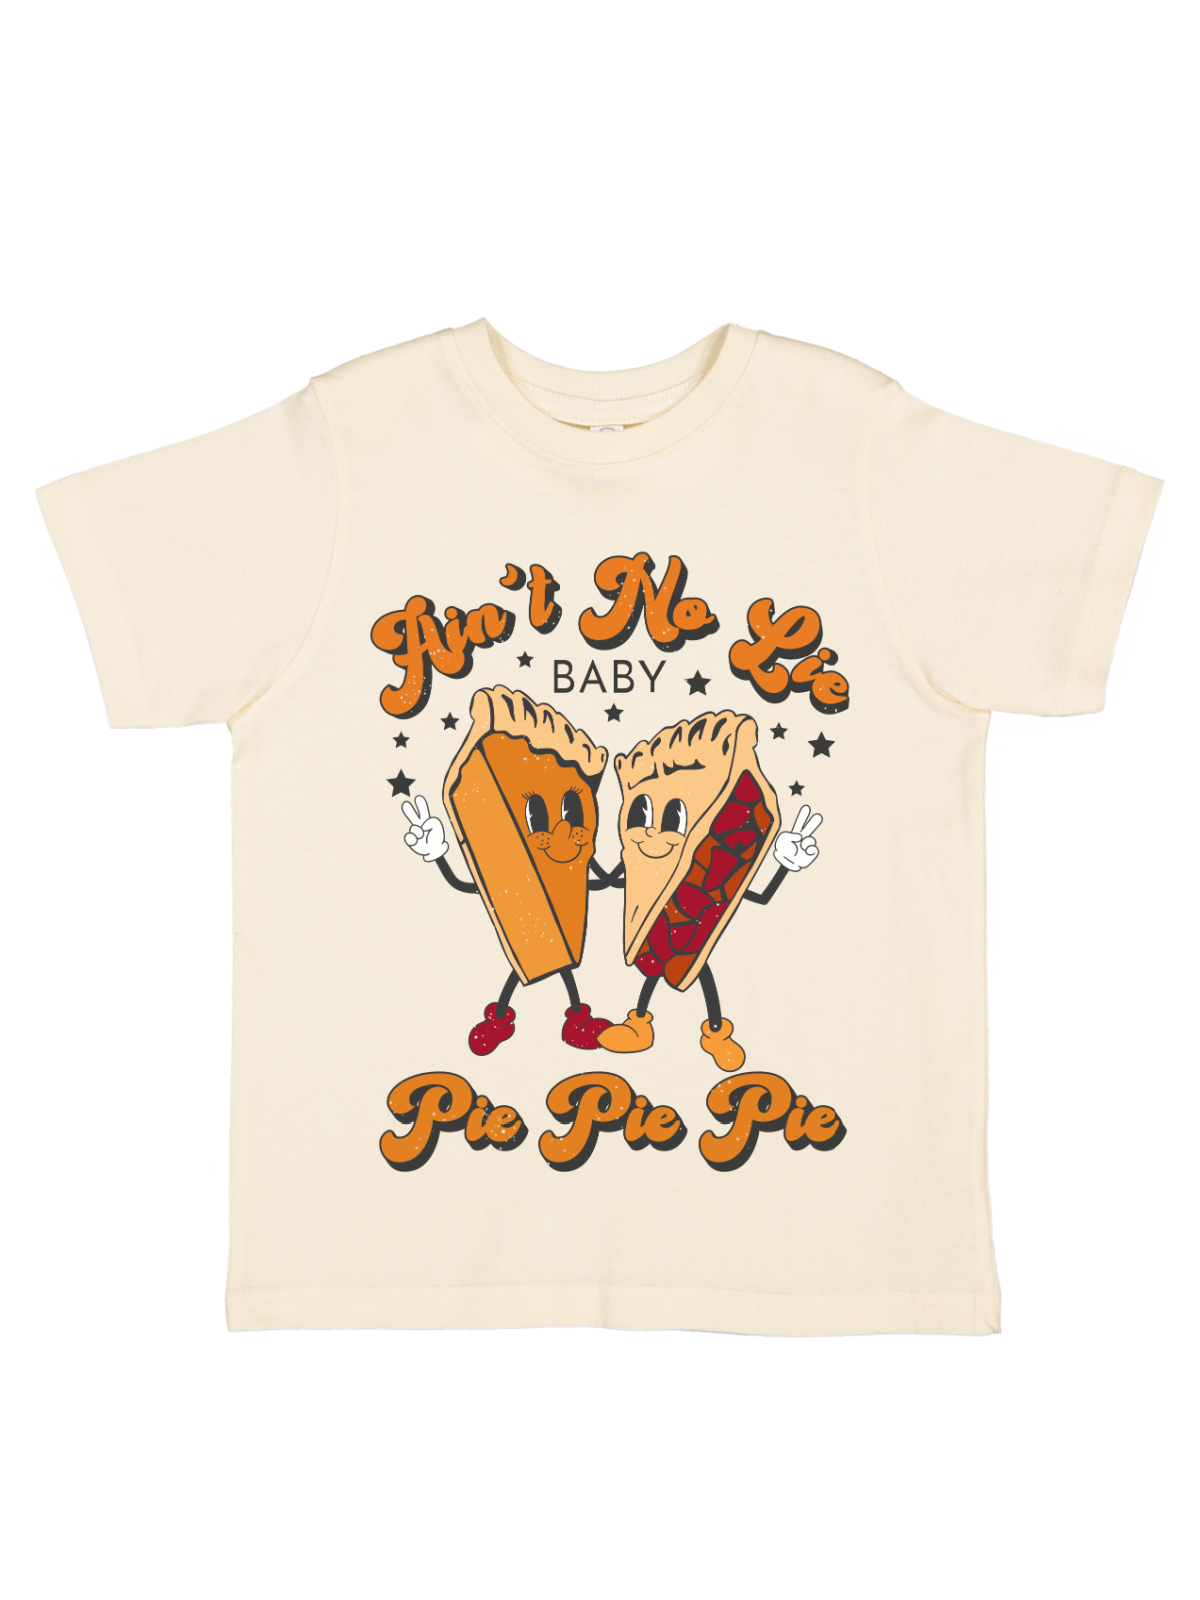 Ain't No Lie Baby Pie Pie Pie Kids Thanksgiving Shirt